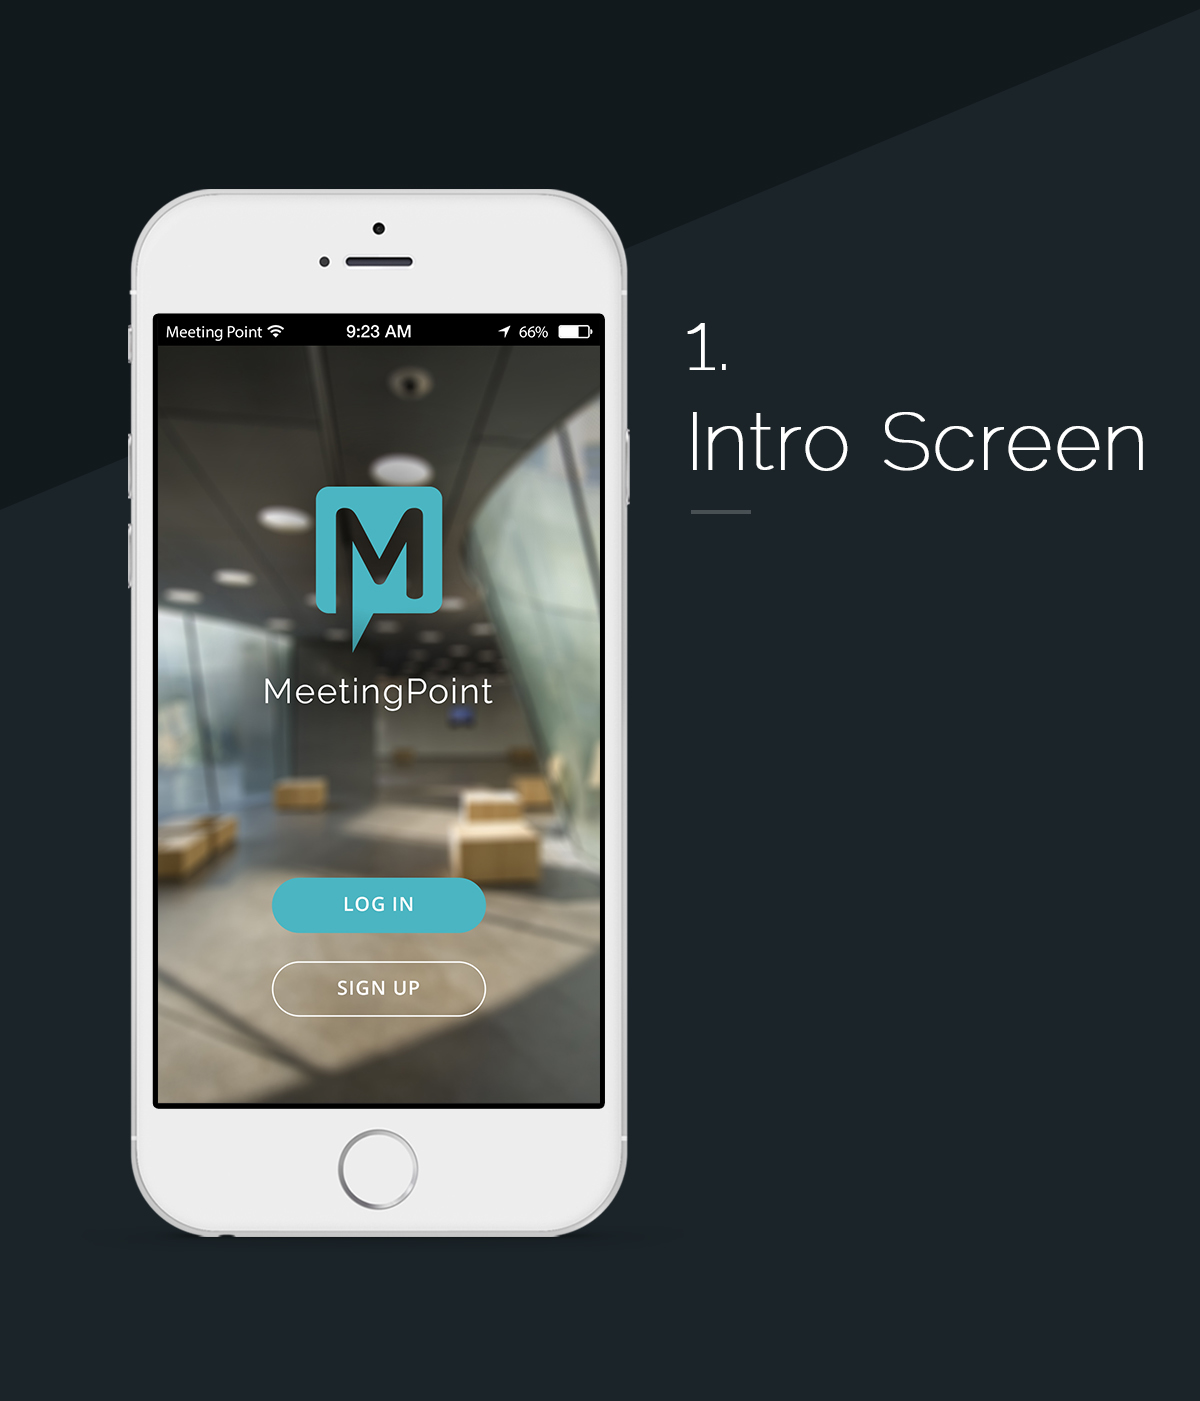 ios UI ux design iphone application graphic app design mobile